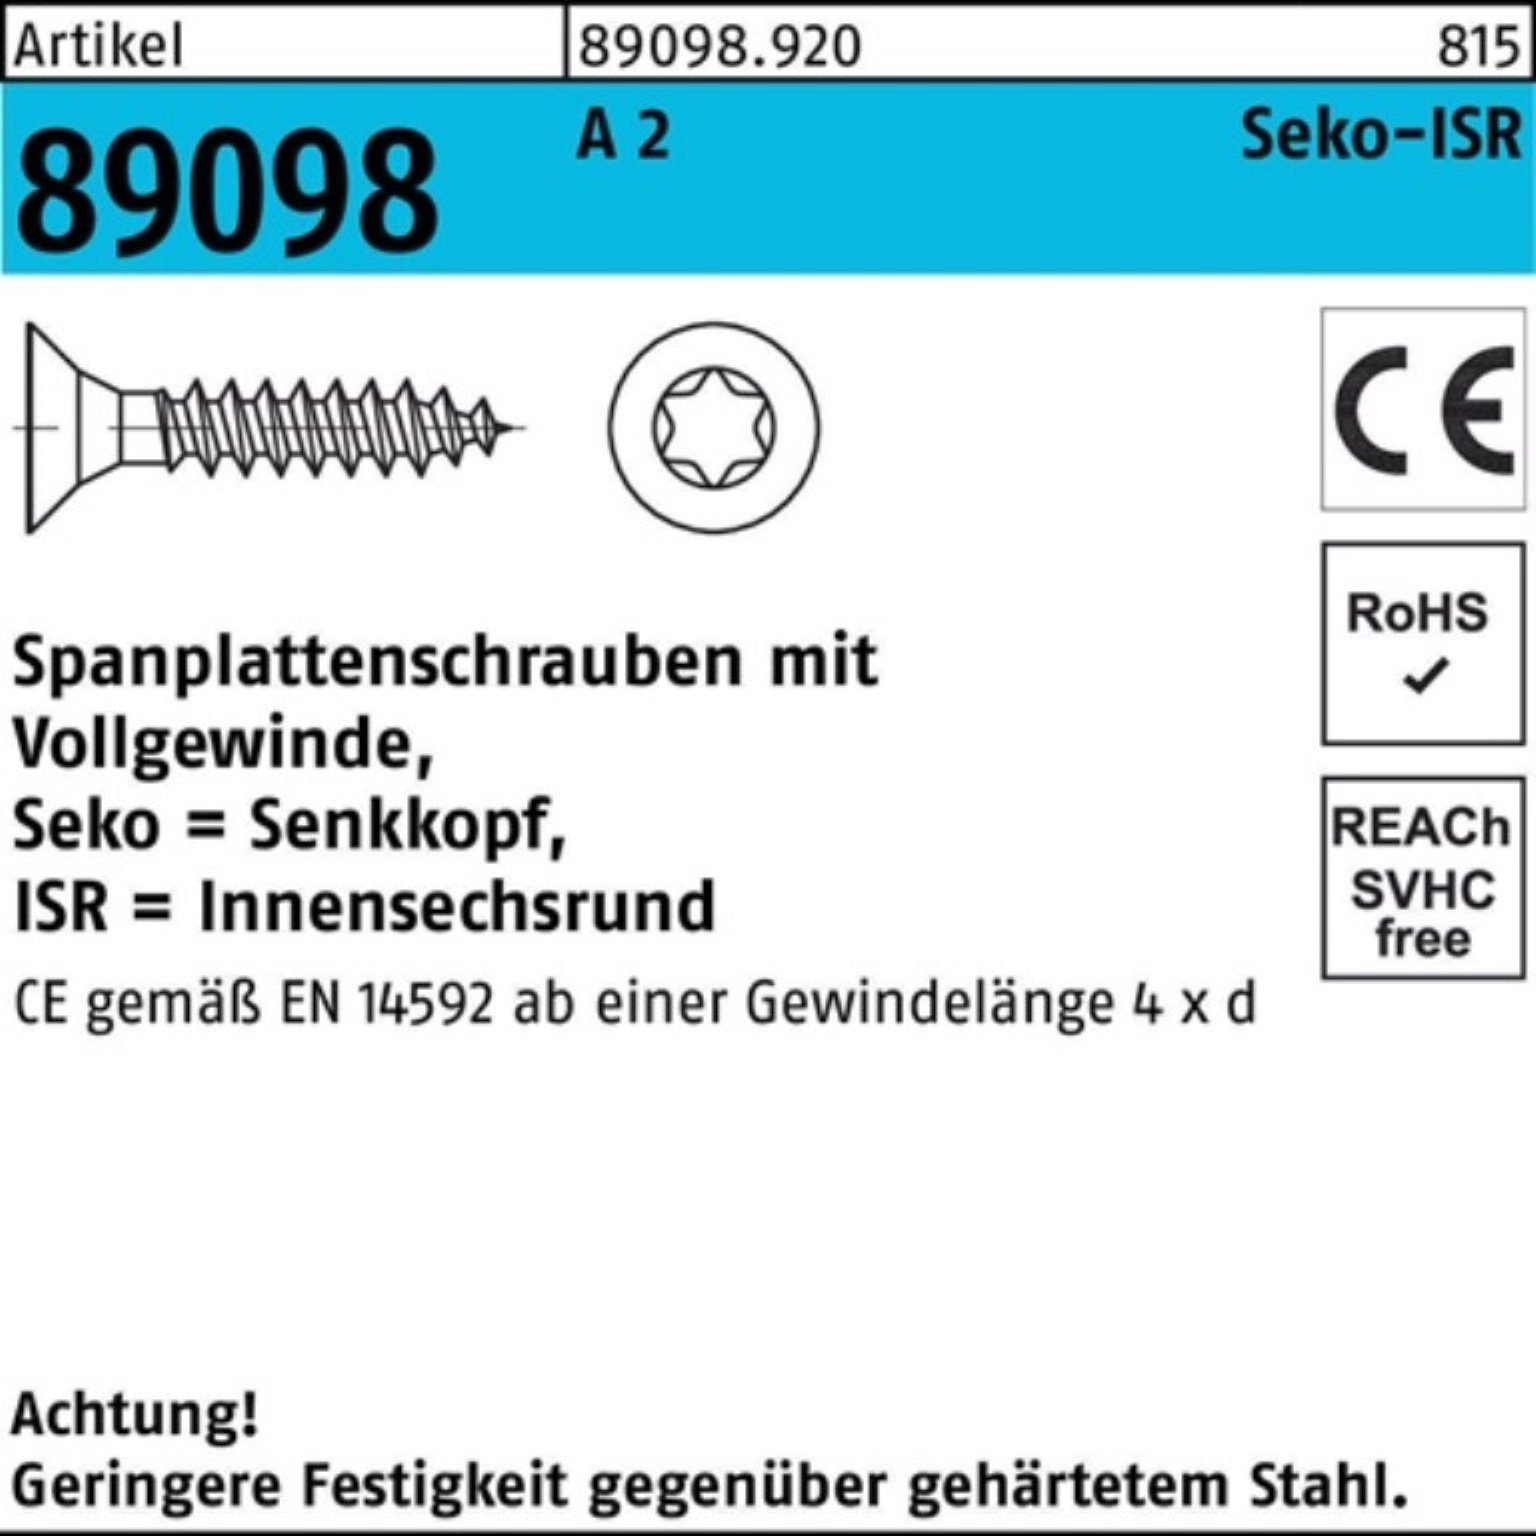 Reyher Spanplattenschraube 1000er Pack Spanplattenschraube R 89098 SEKO ISR VG 5x 30-T25 A 2 1000